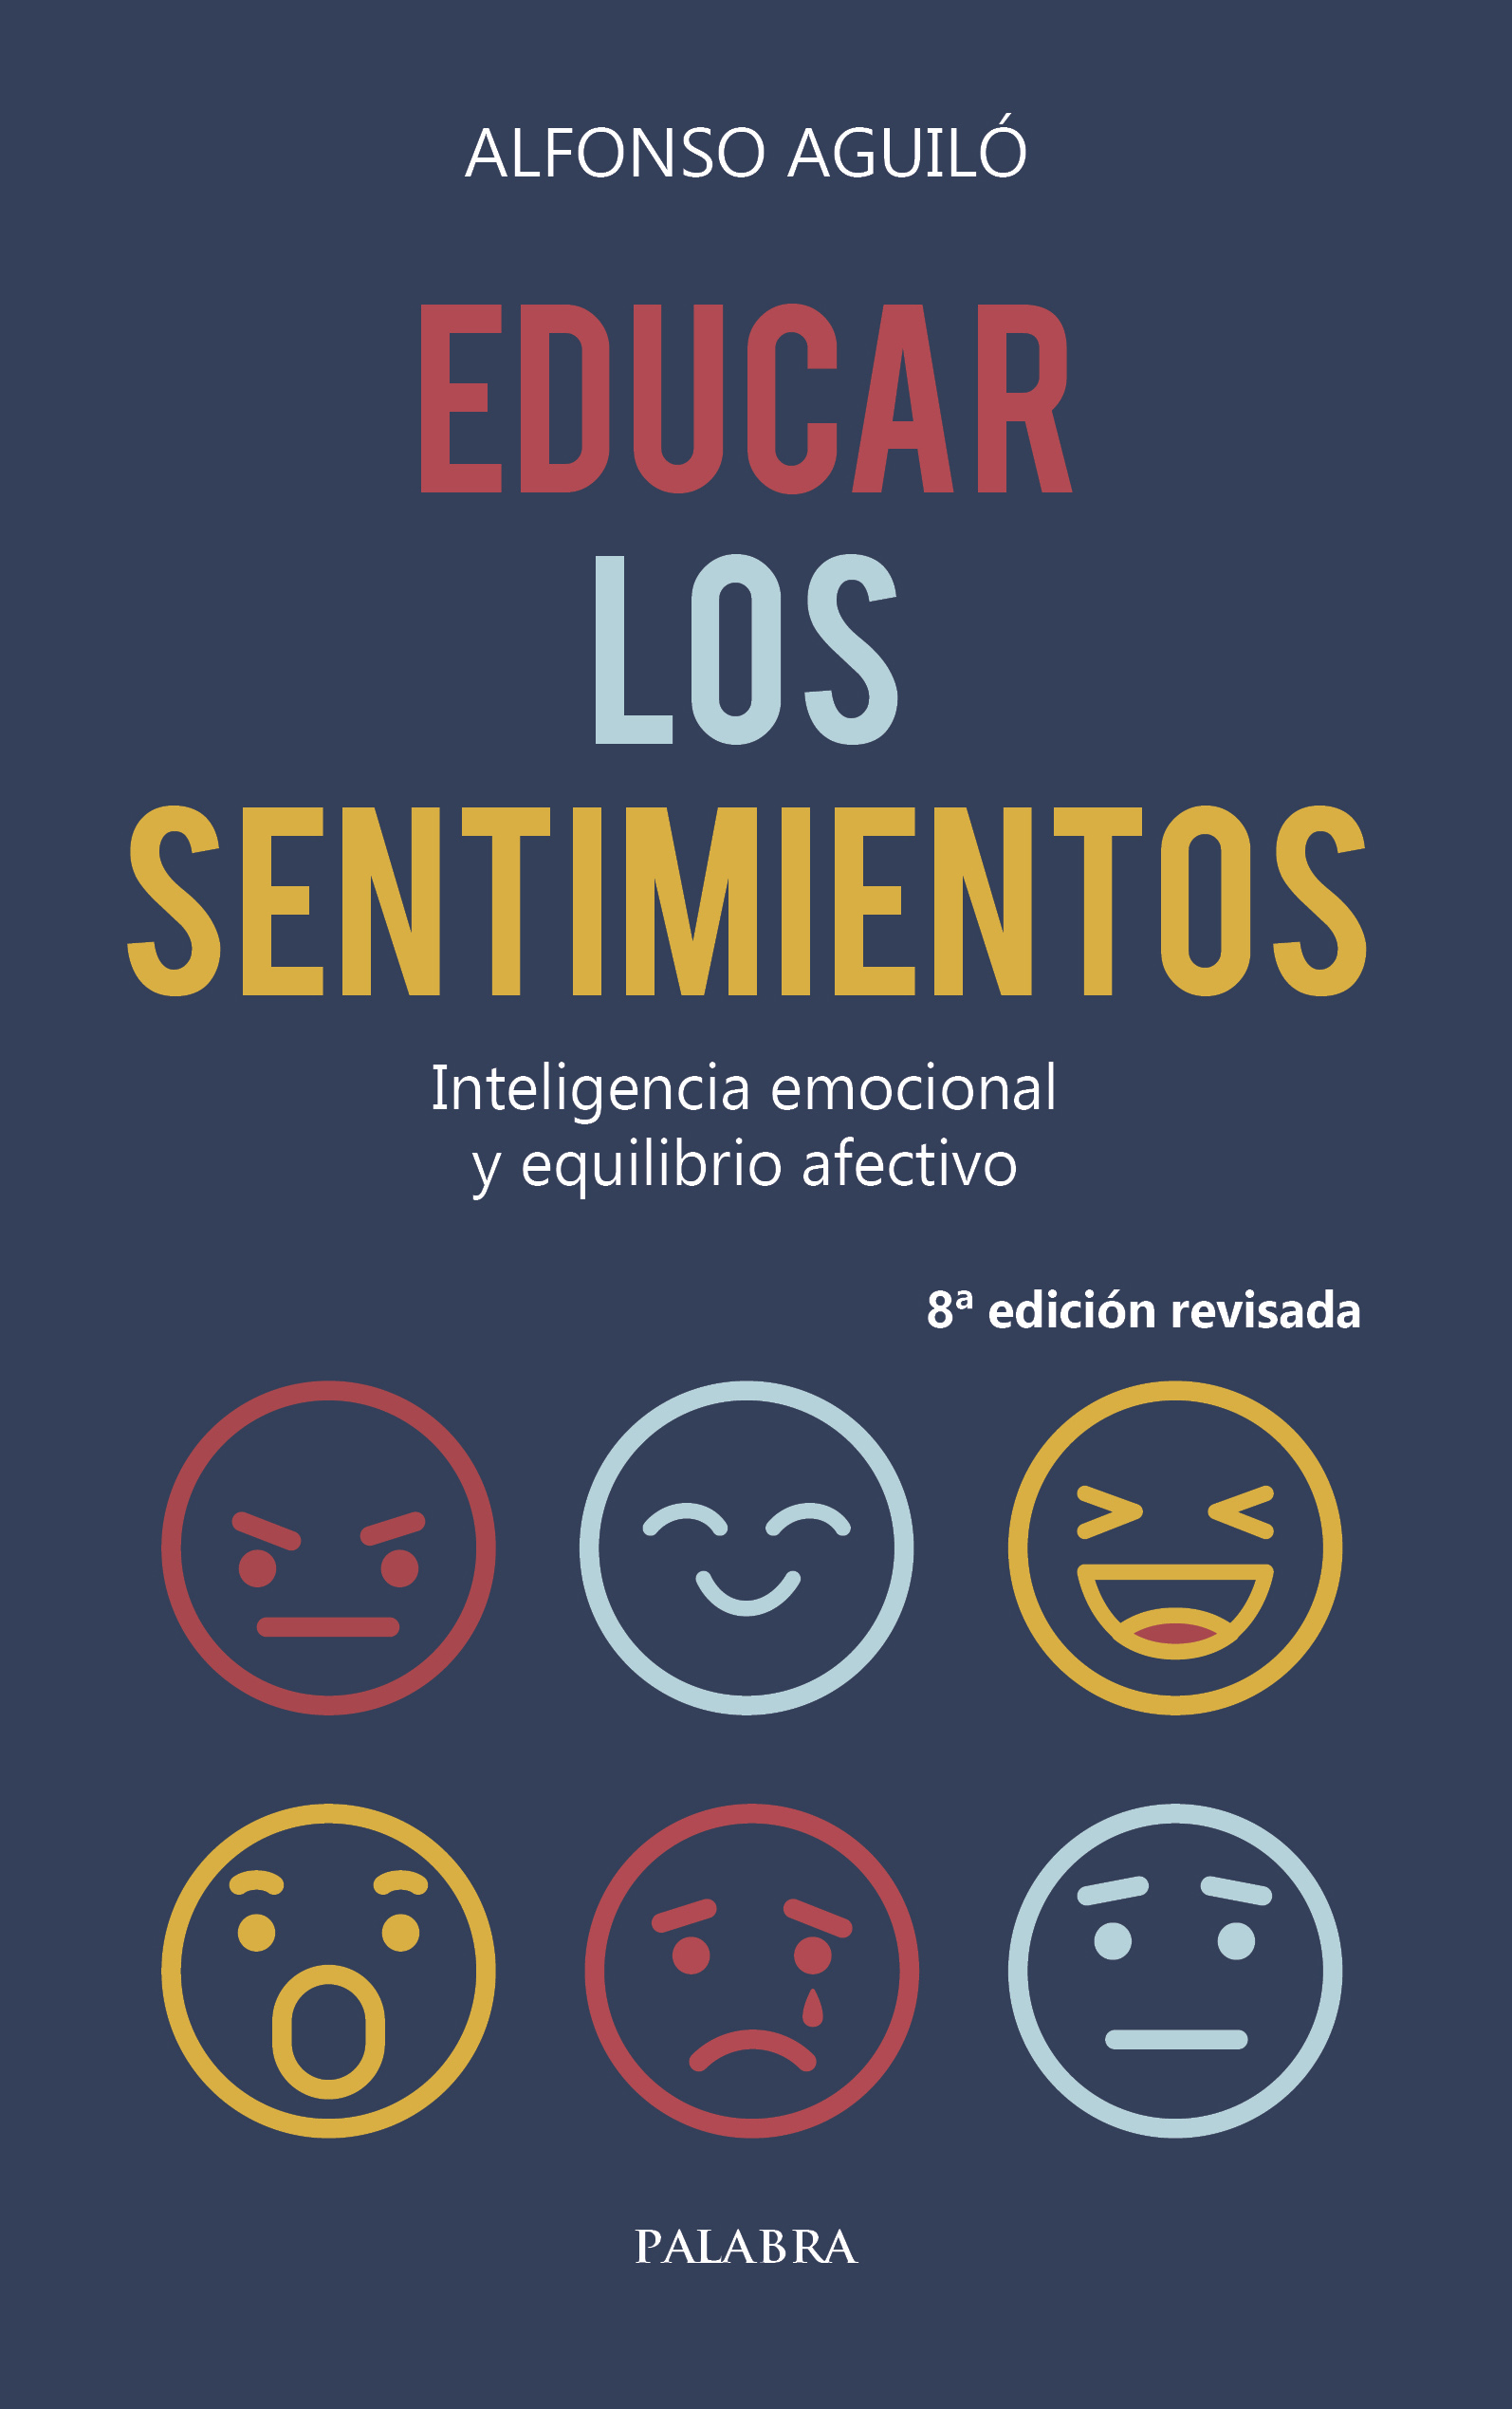 Libro: Educar los sentimientos de Alfonso Aguiló Pastrana